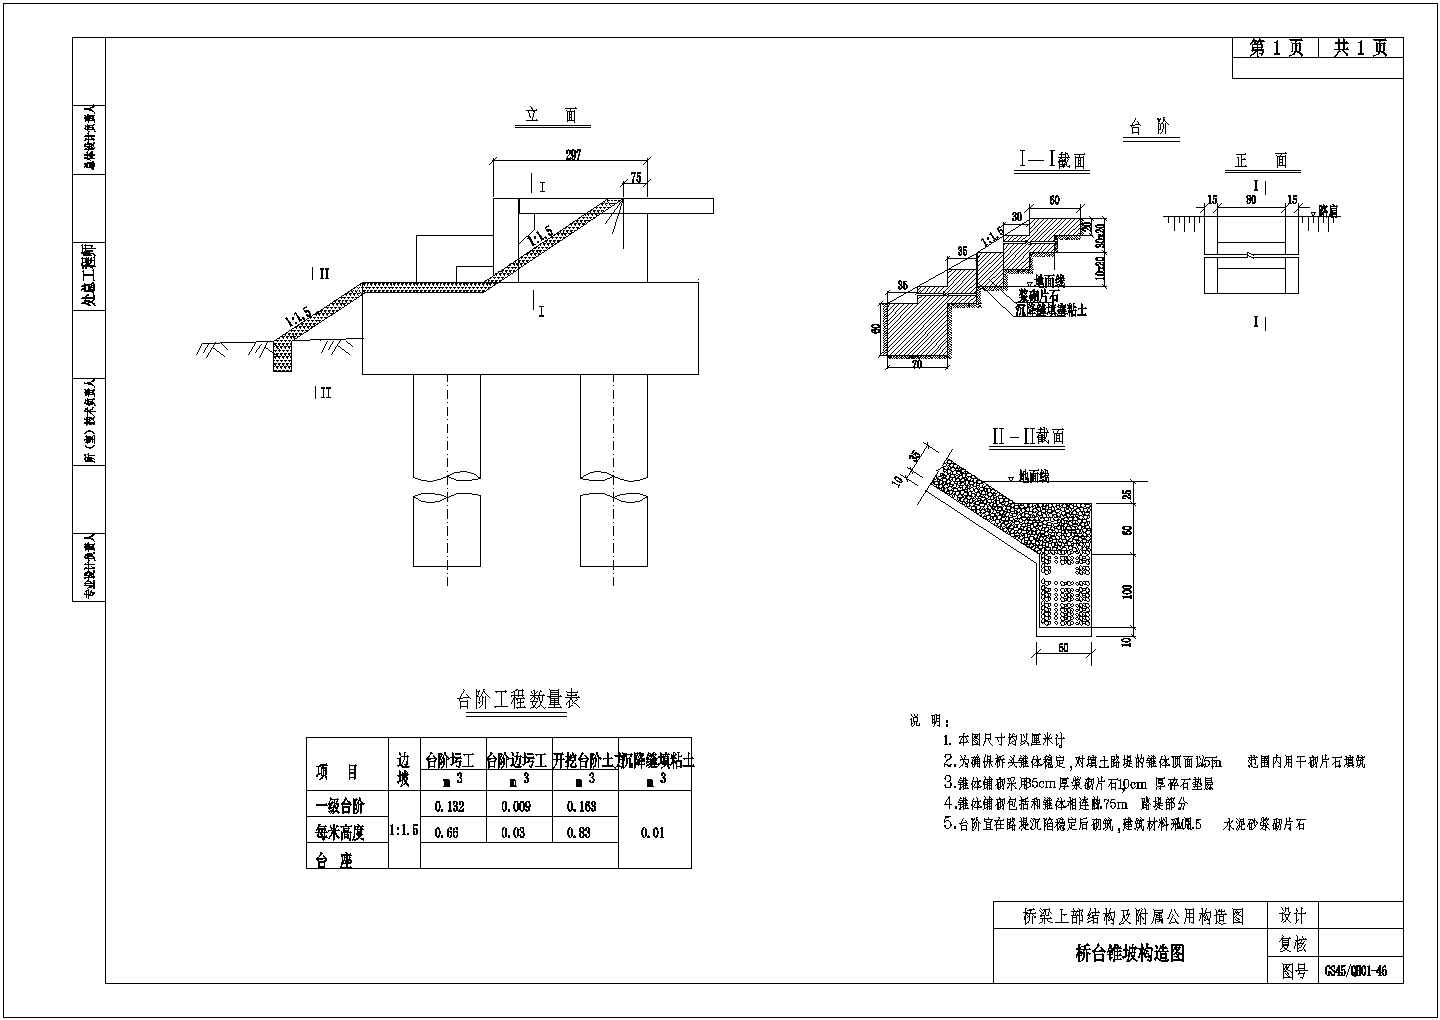 简支梁桥面连续结构附属桥台锥坡构造节点详图设计